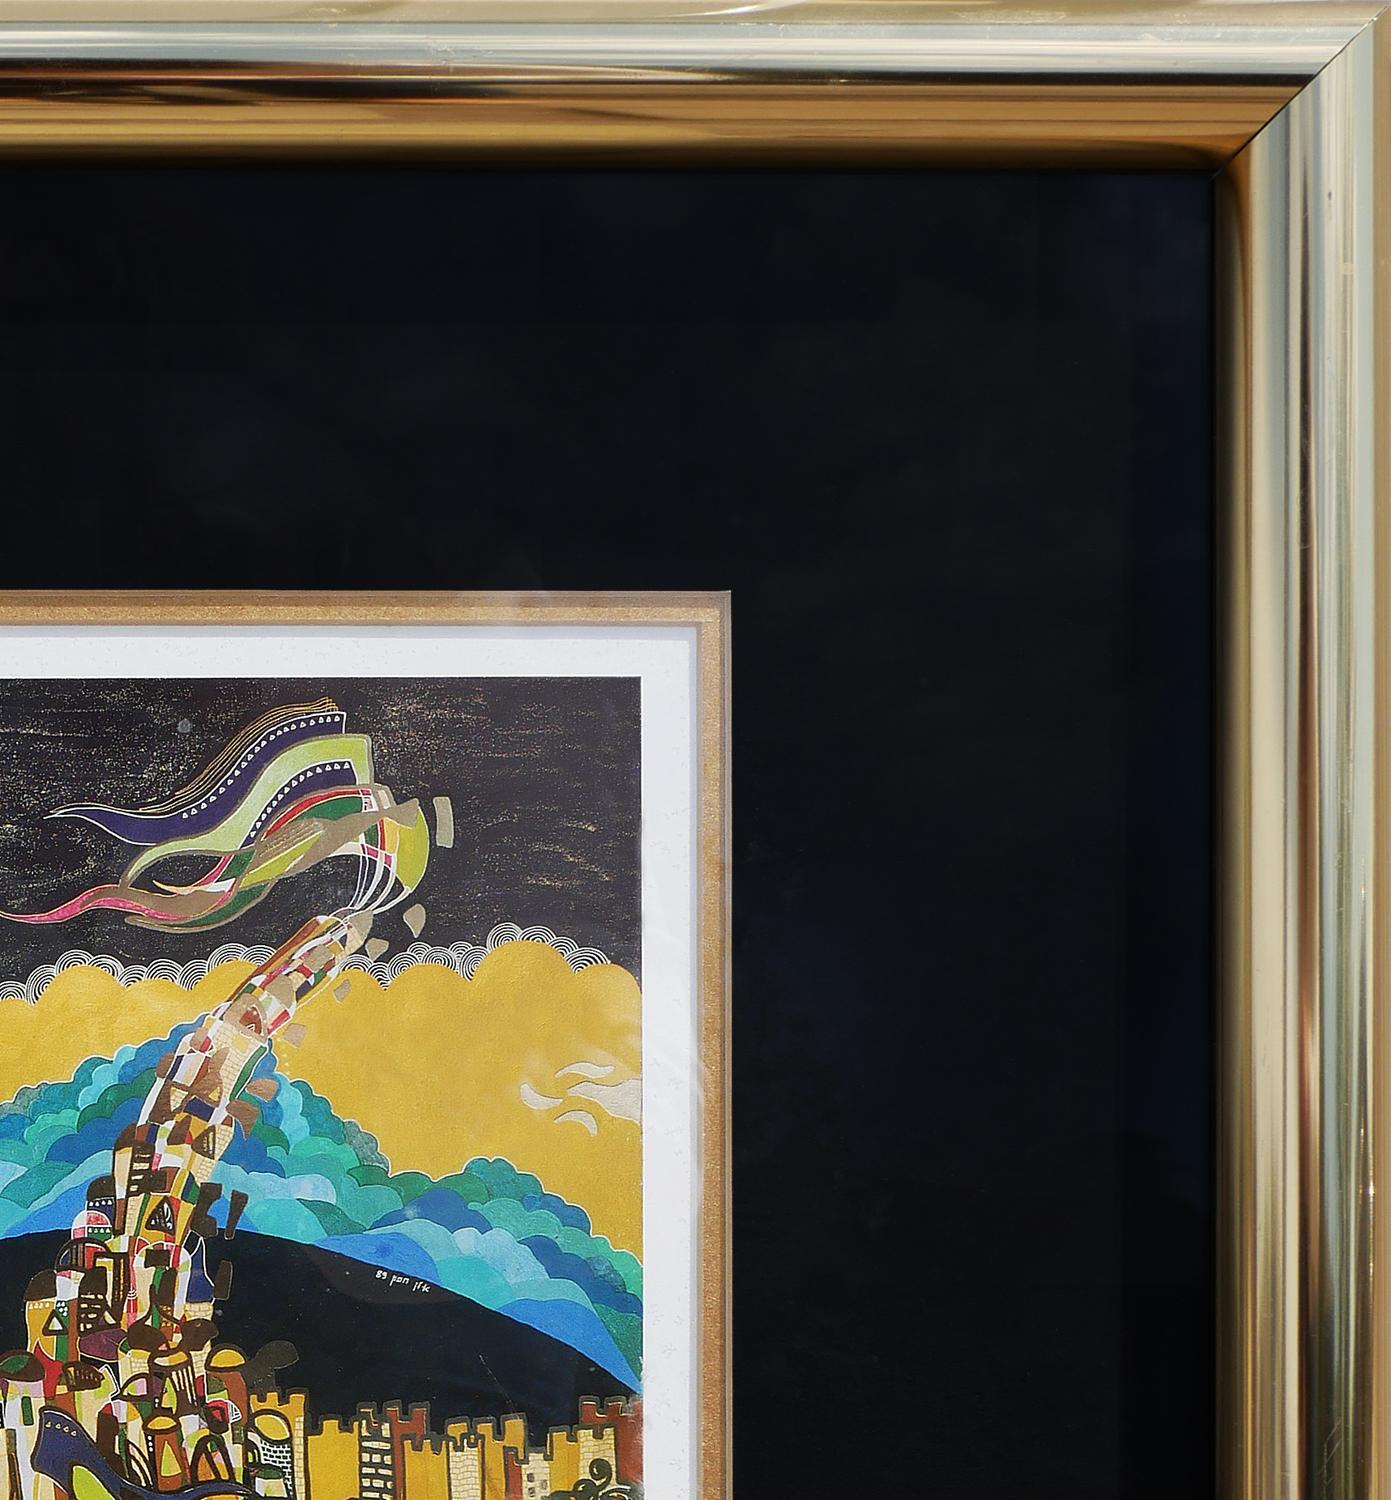 Gelbe, grüne und blaue geometrische abstrakte Lithografie des israelischen Künstlers Ilan Hasson. Das Stück stellt den Turm zu Babel dar, der aus verschiedenen Gebäudeformen mit metallischen Details besteht. Der Turm steht an einem Bogenhang und vor